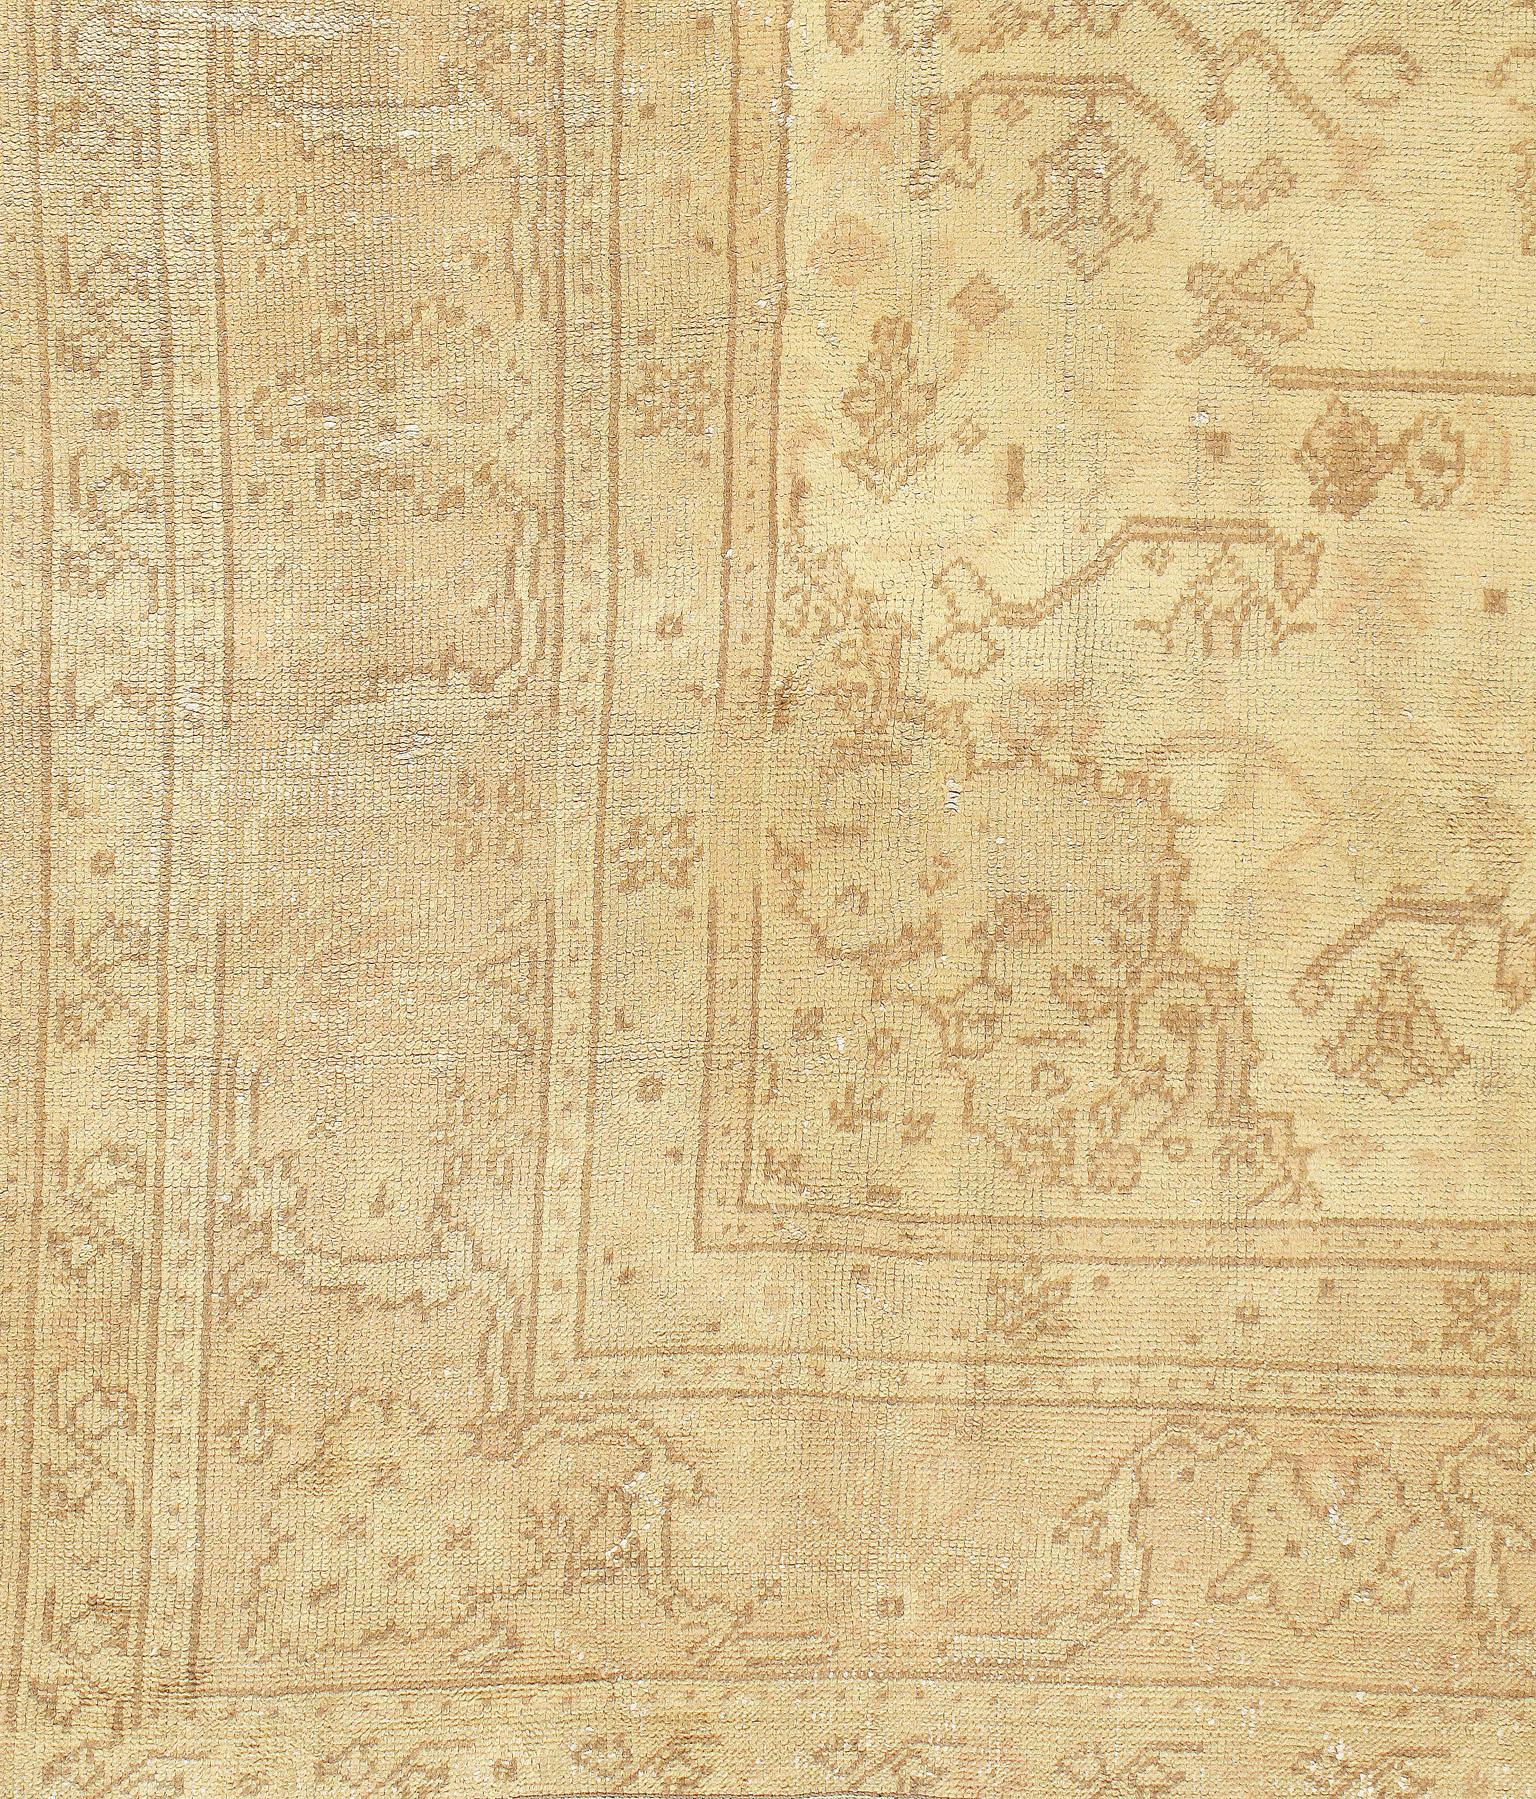 Tapis antique shabby chic Oushak, circa 1920 8'11 x 11'10.  Les Oushaks de couleur claire font partie des tapis orientaux les plus populaires, connus pour la haute qualité de leur laine, leurs beaux motifs et leurs couleurs chaudes. Ces favoris des